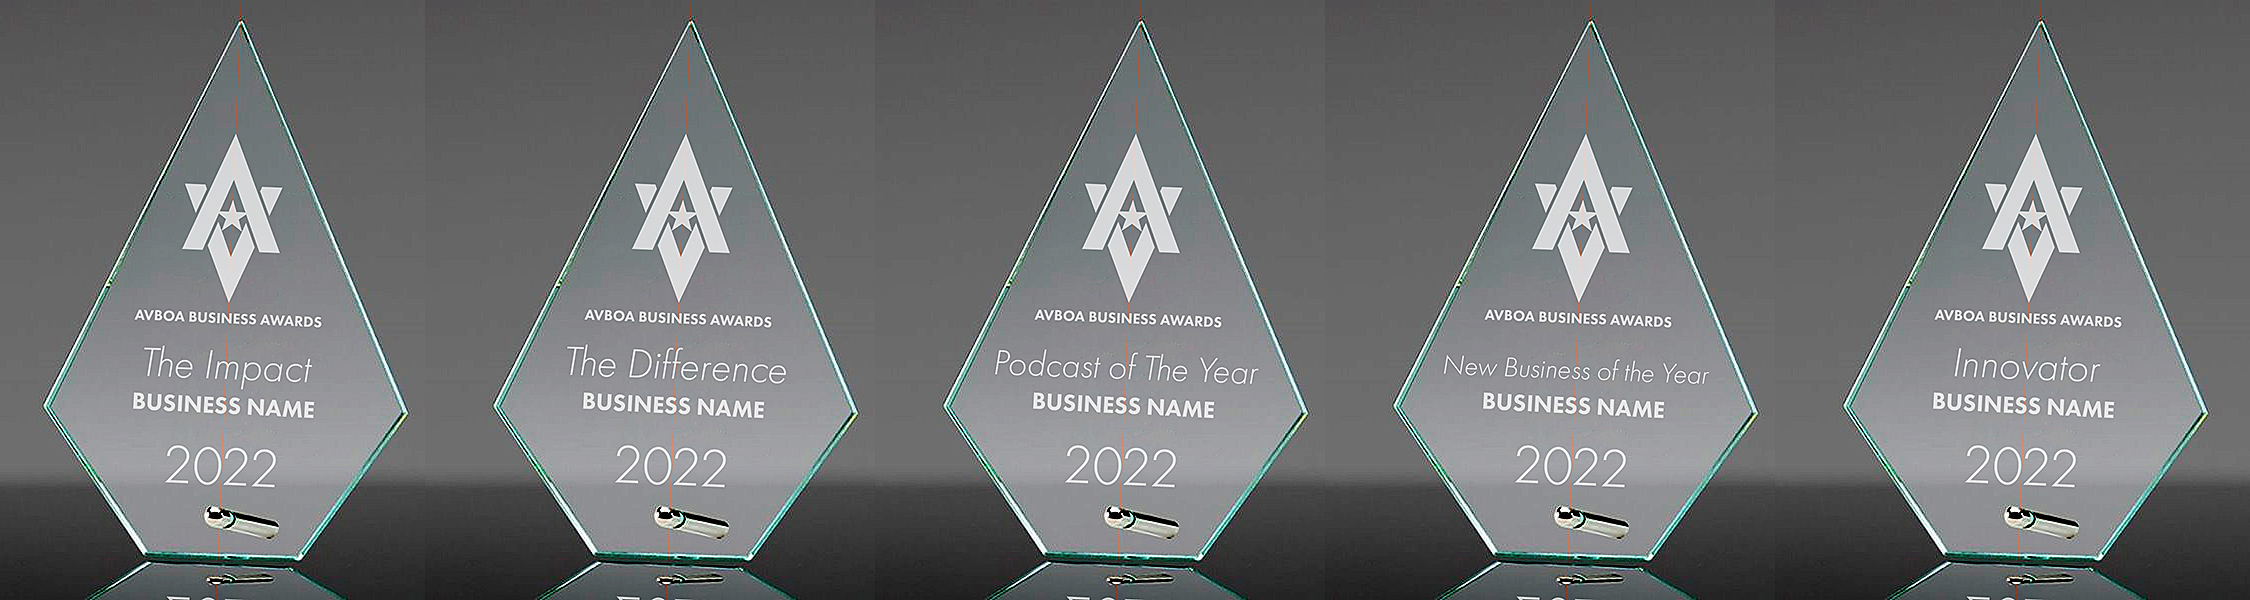 AVBOA Business Awards